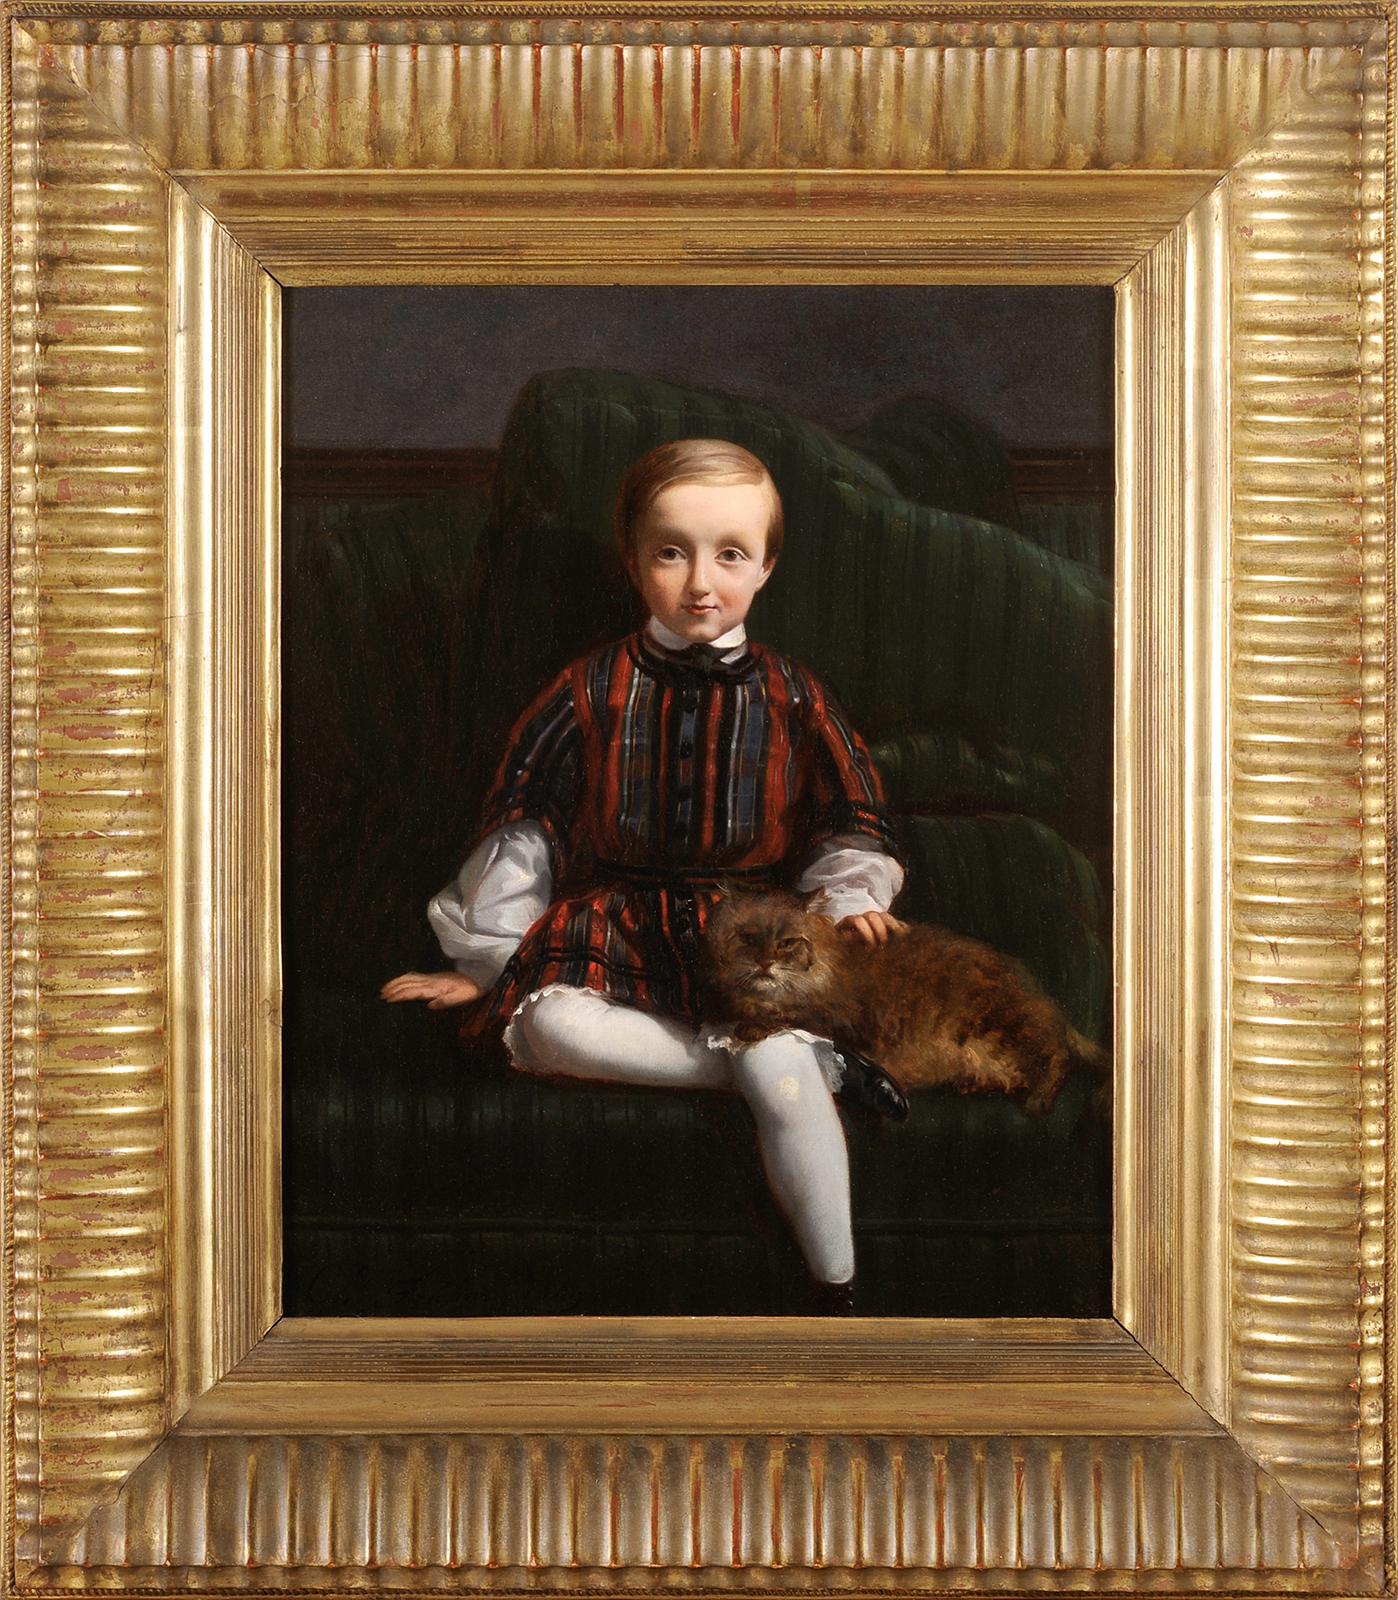 Charles FRÉCHOU
(Paris 1820 - Paris 1900)
Porträt eines Kindes mit einer Katze
Öl auf Leinwand
H. 41 cm; L. 33 cm
Signiert unten links und datiert 1849

Abgesehen von der Teilnahme am Salon zwischen 1841 und 1888 sind nur wenige Elemente aus seinem